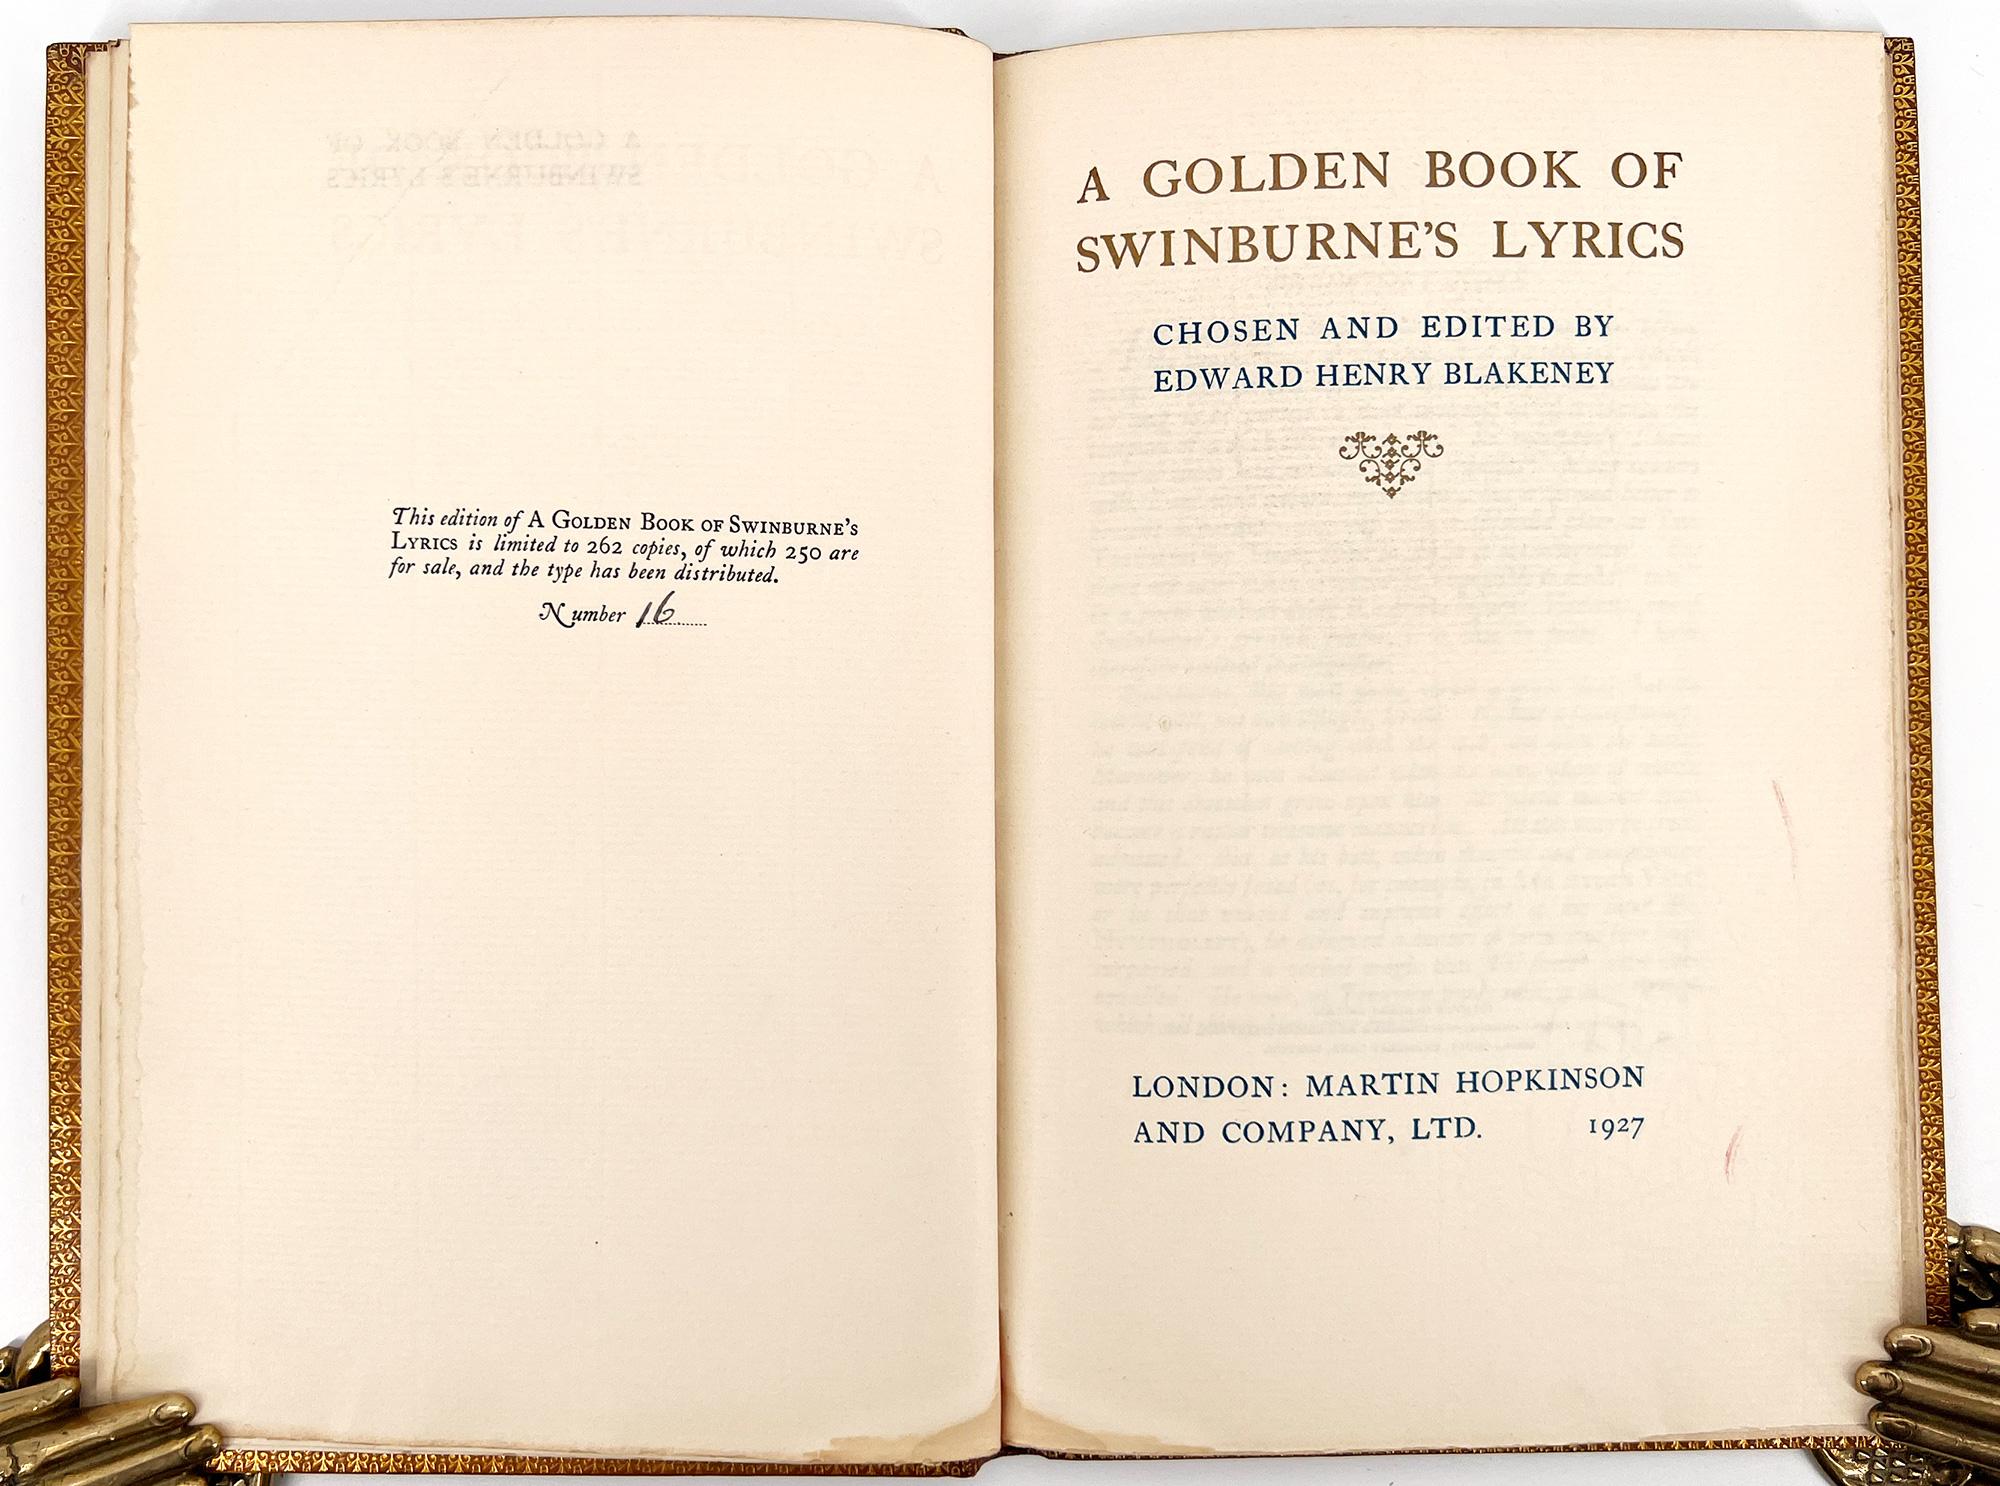 Une belle collection reliée en Zaehnsdorf de la poésie d'Algernon Charles Swinburne (1837 - 1909) dont les œuvres ont souvent traité des tabous victoriens, tels que le lesbianisme, le sado-masochisme et l'antithéisme. Ses poèmes ont de nombreux